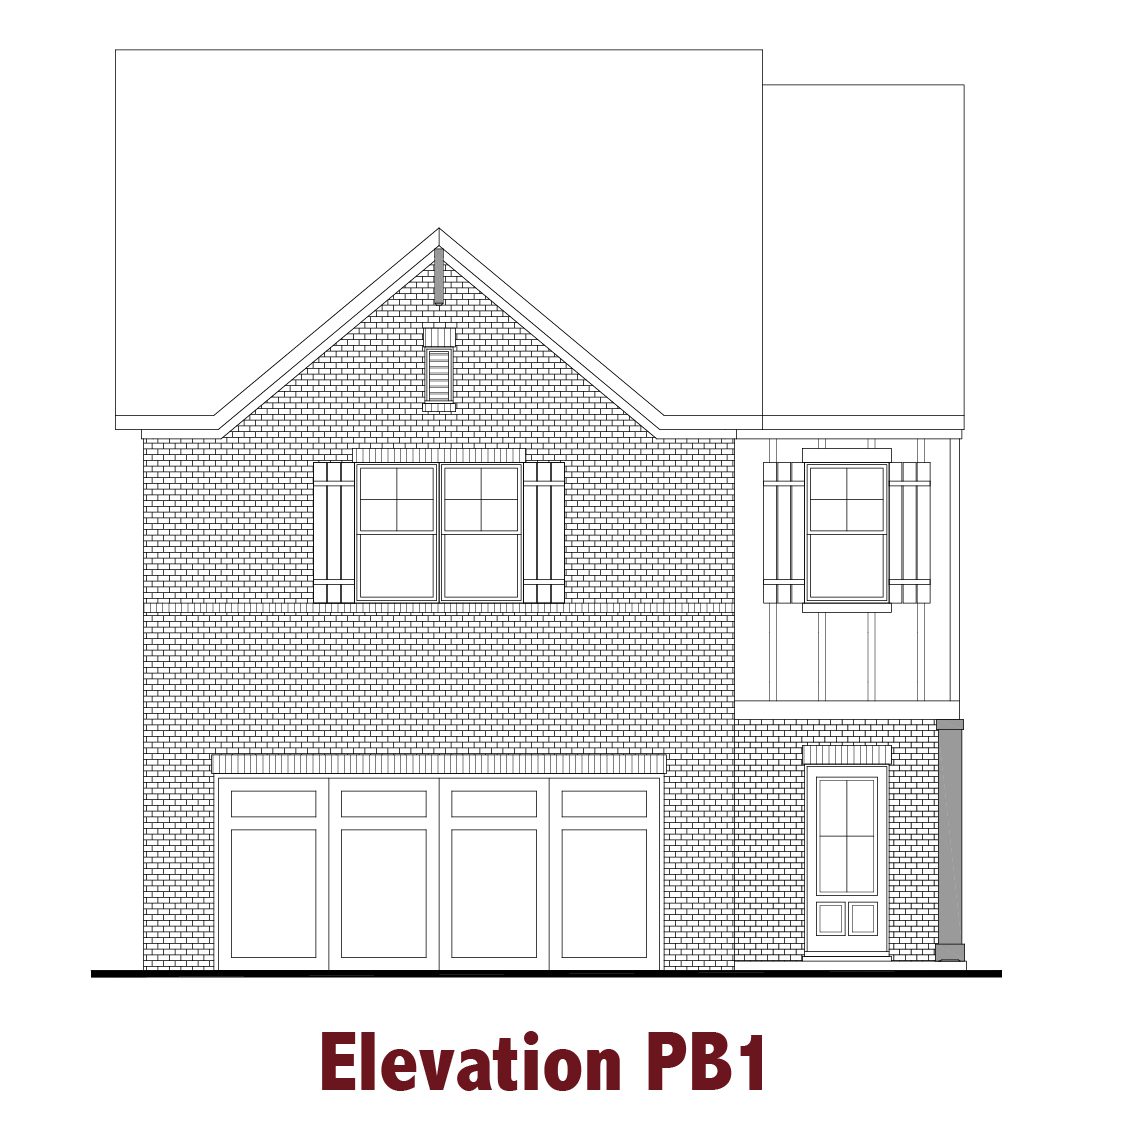 Pembroke elevations Image